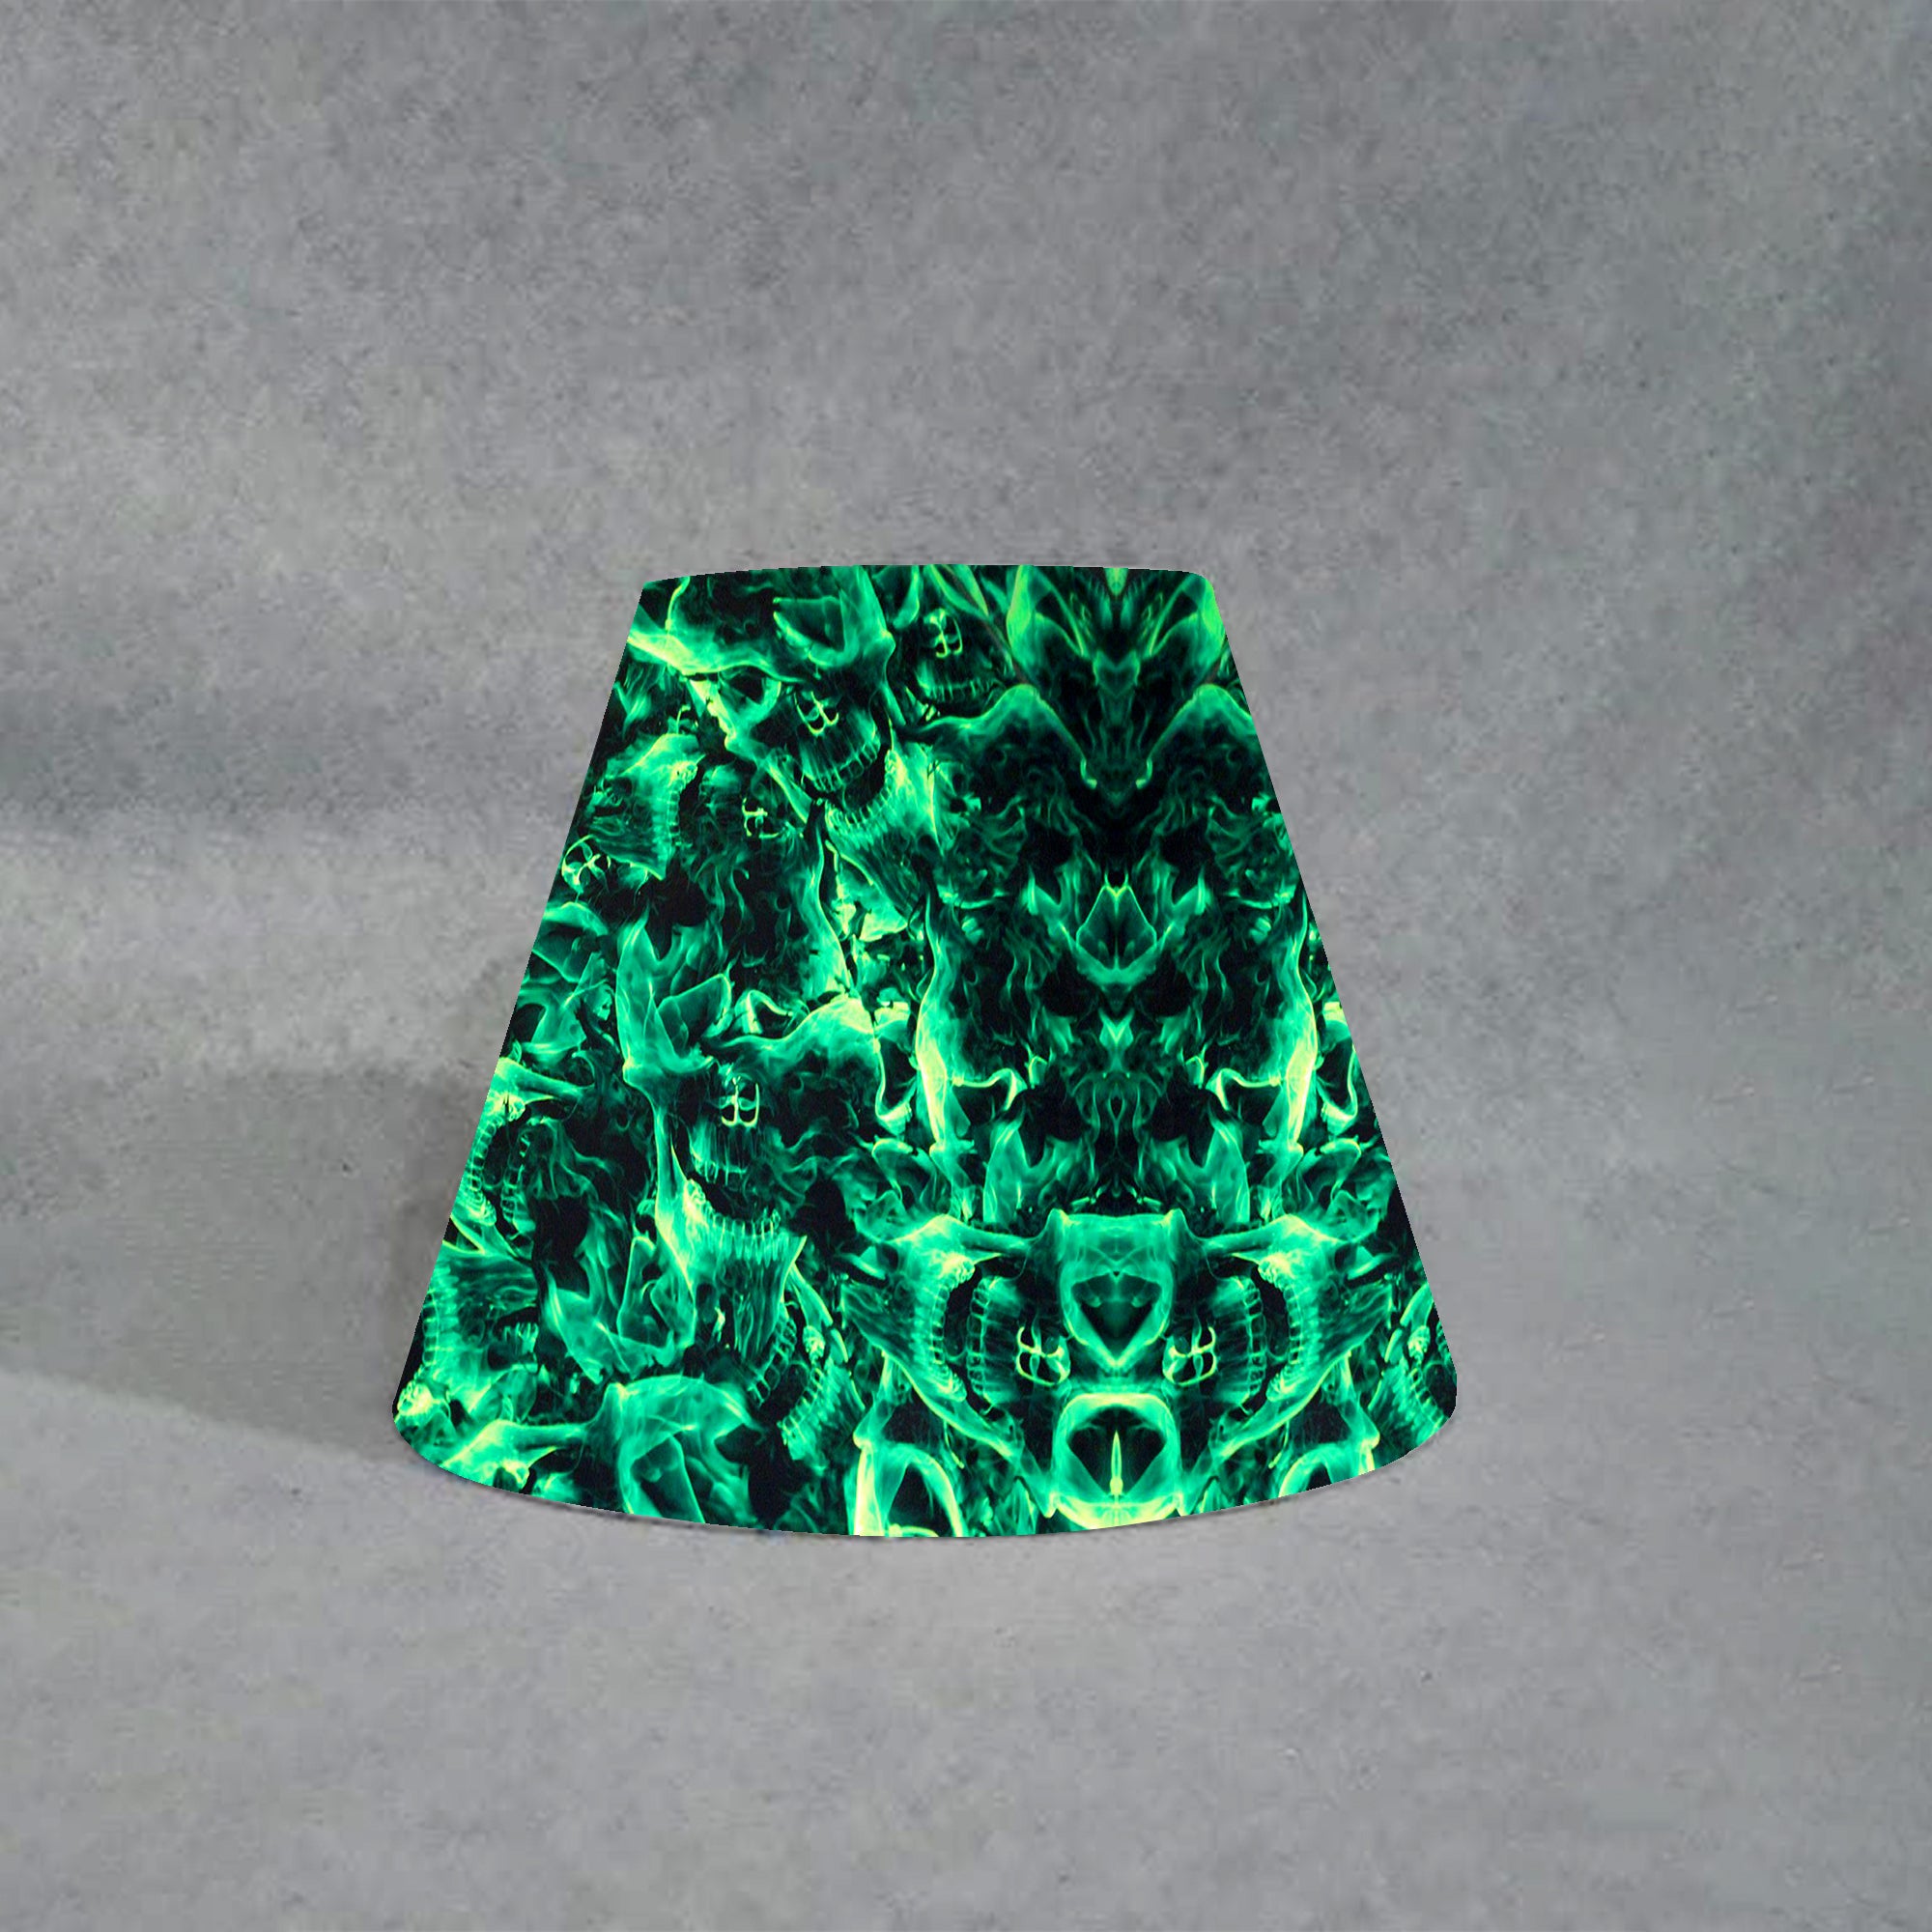 Burning Skulls Green Pyramid Lamp Shade 08267